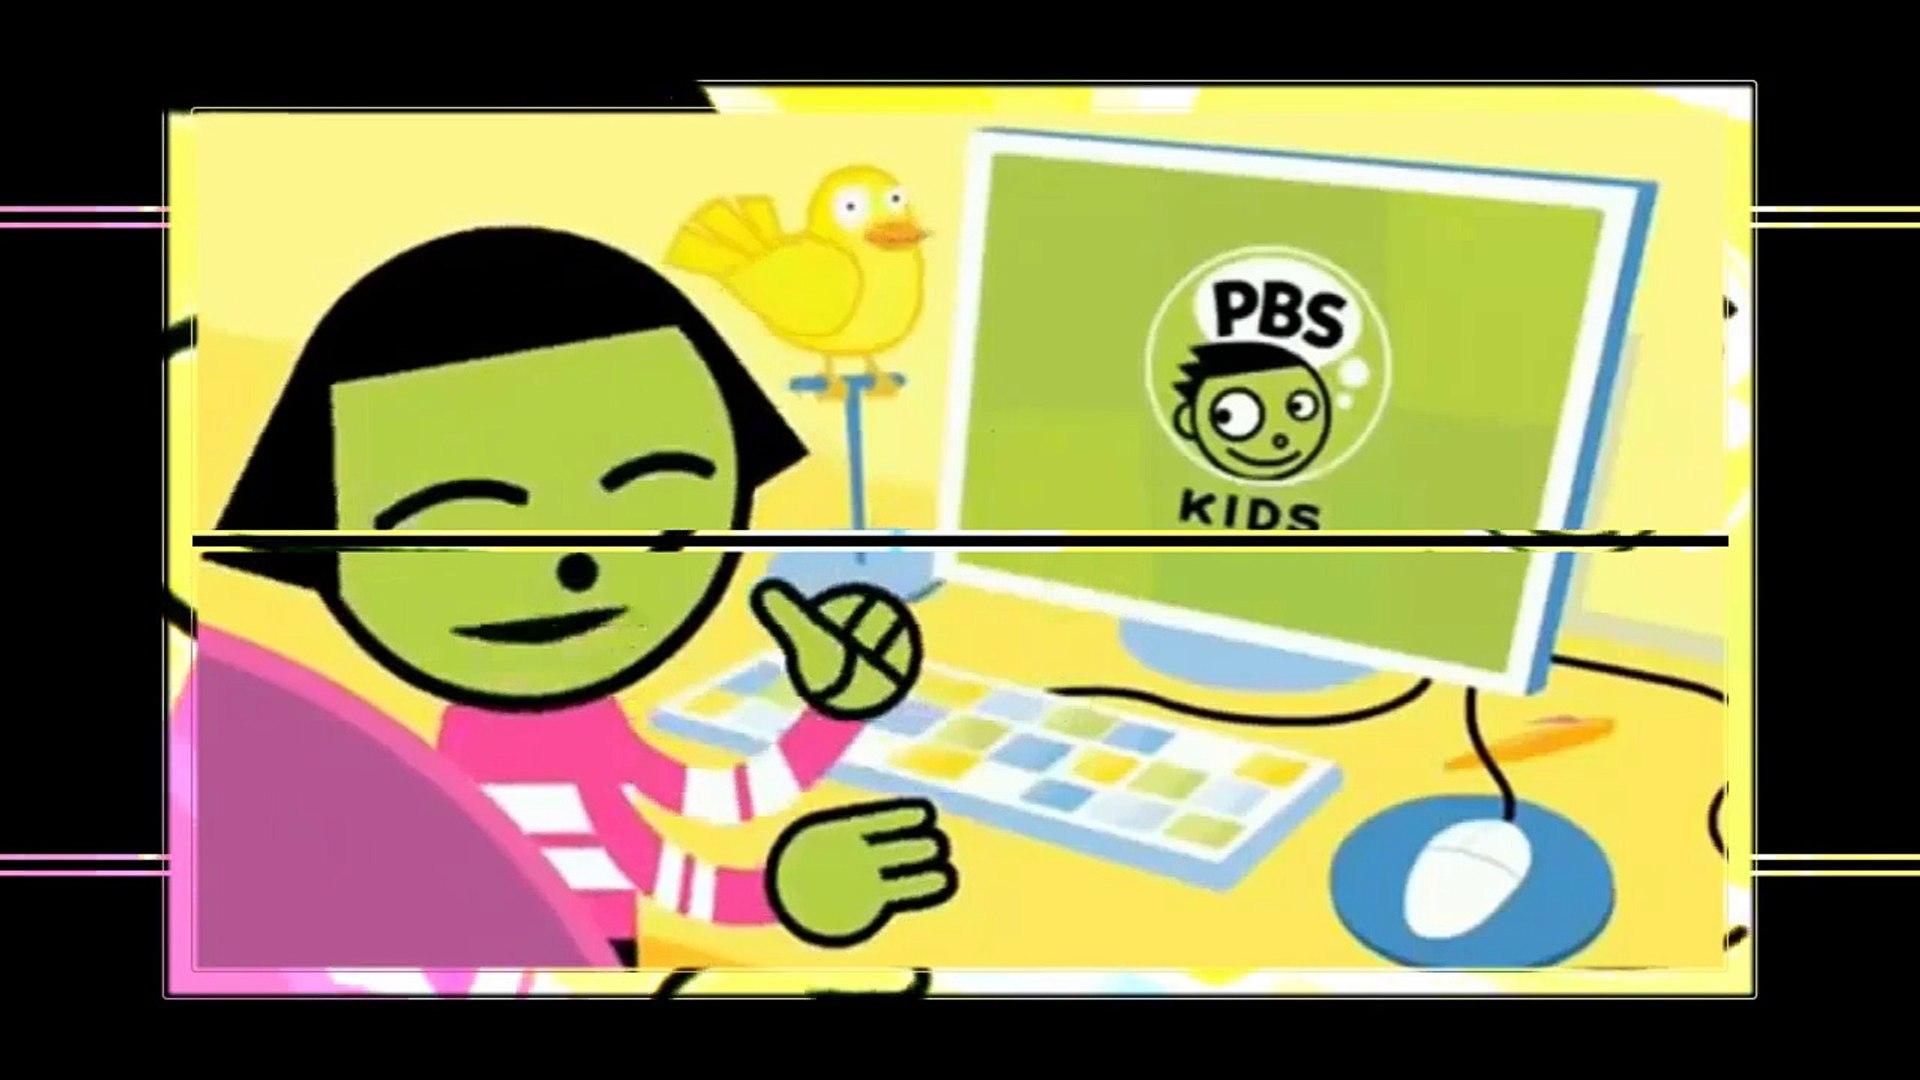 PBS KIDS Logo - PBS Kids Bumpers Dot logo Effects 2018